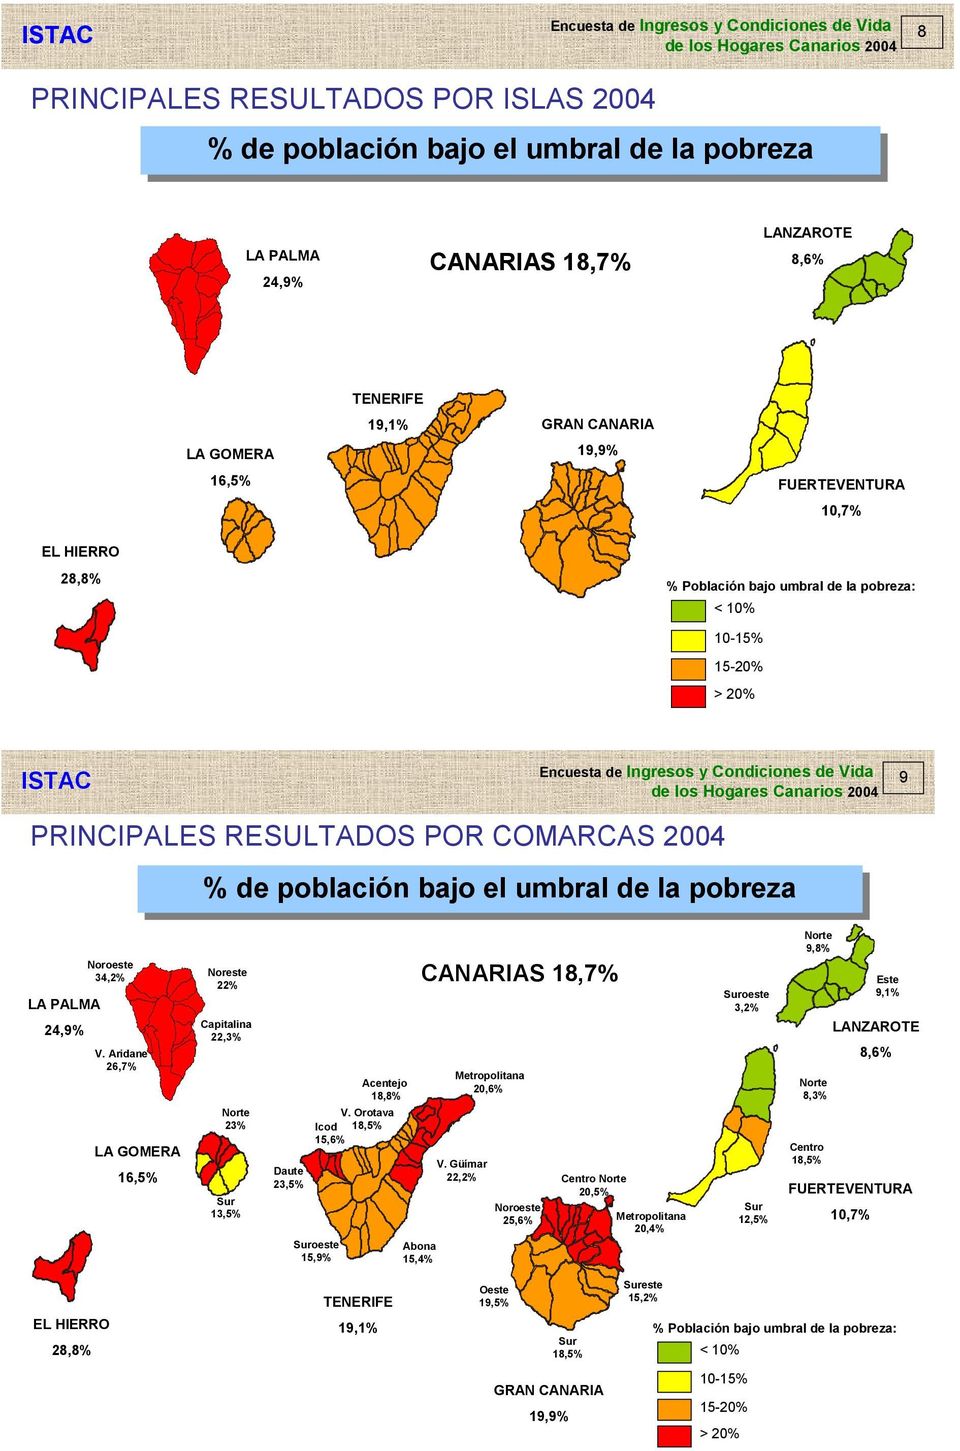 Orotava Icod 18, 15,6% Suroeste 15,9% Acentejo 18,8% Abona 15,4% CANARIAS 18,7% Metropolitana 20,6% V.